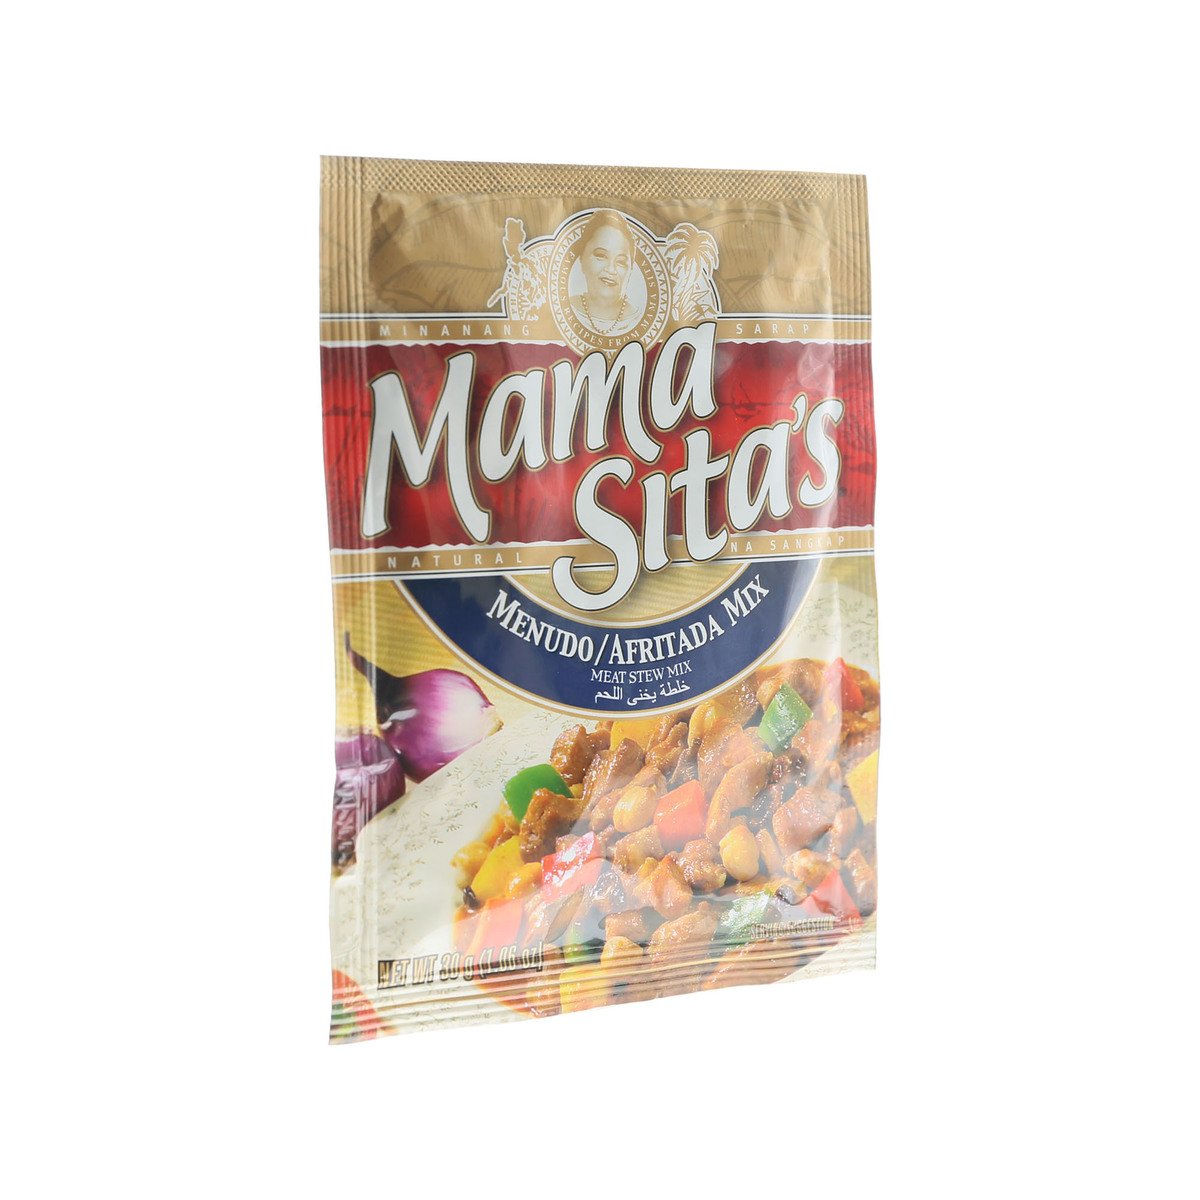 Mama Sita's Meat Stew Mix (Menudo/Afritada) 30 g